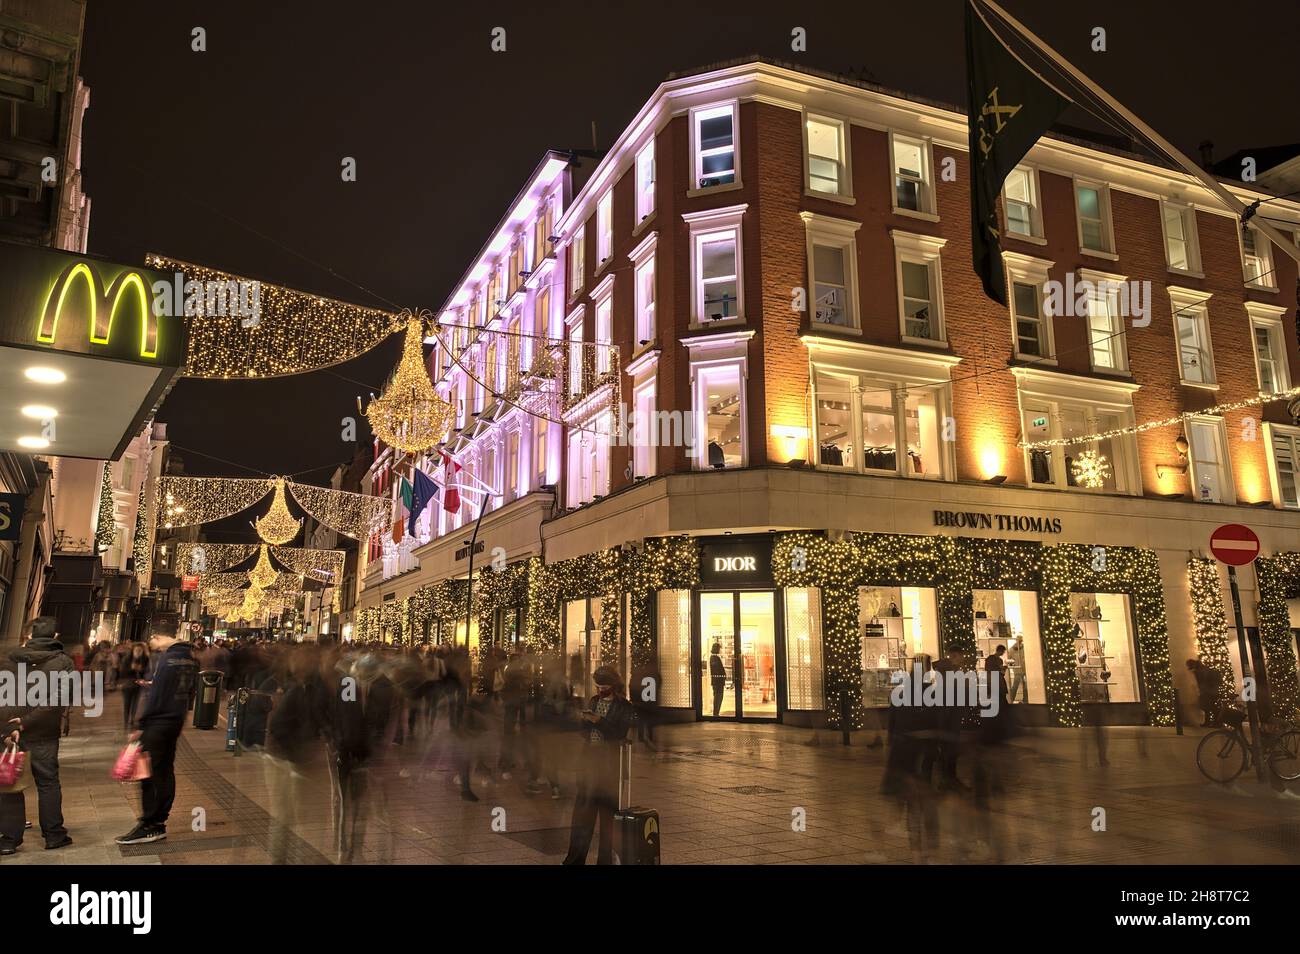 Dublin, Irlande - 13 novembre 2021 : magnifique vue panoramique nocturne sur l'hôtel Brown Thomas décoré de lumières de Noël sur la rue Grafton surpeuplée Banque D'Images